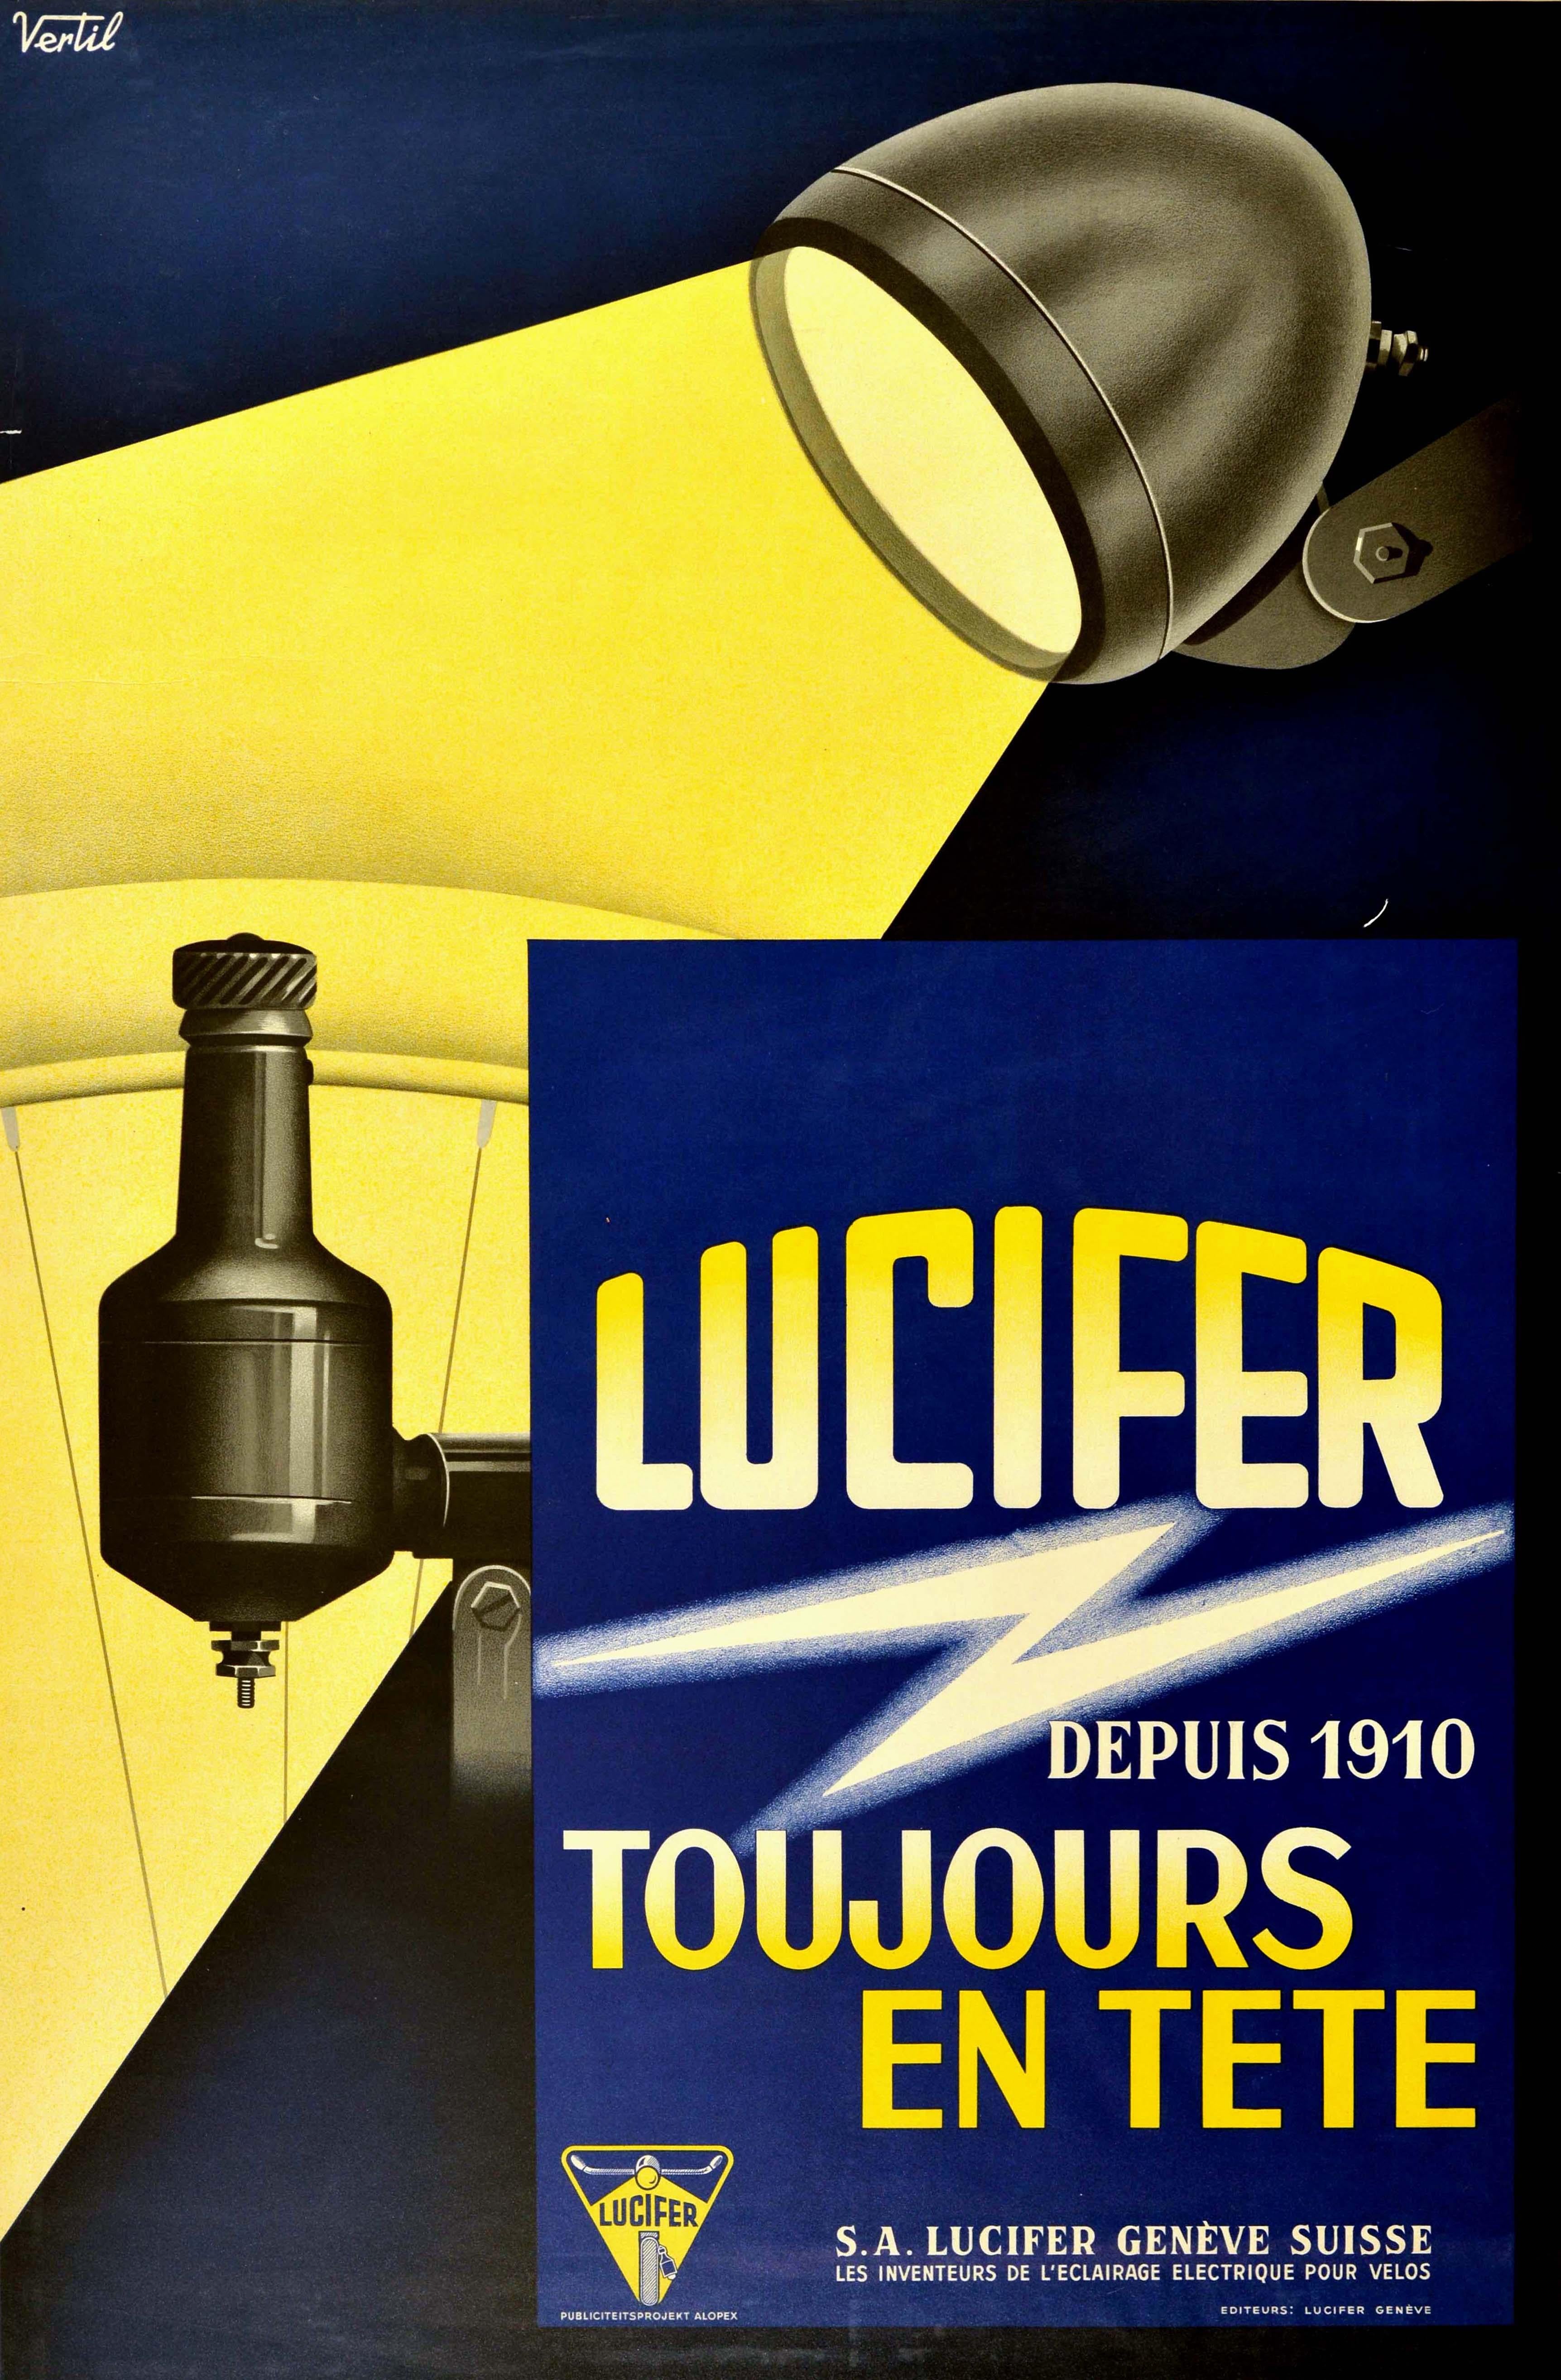 Vertil Print - Original Vintage Poster Lucifer Geneva Electrical Bicycle Light Bulb Bike Design